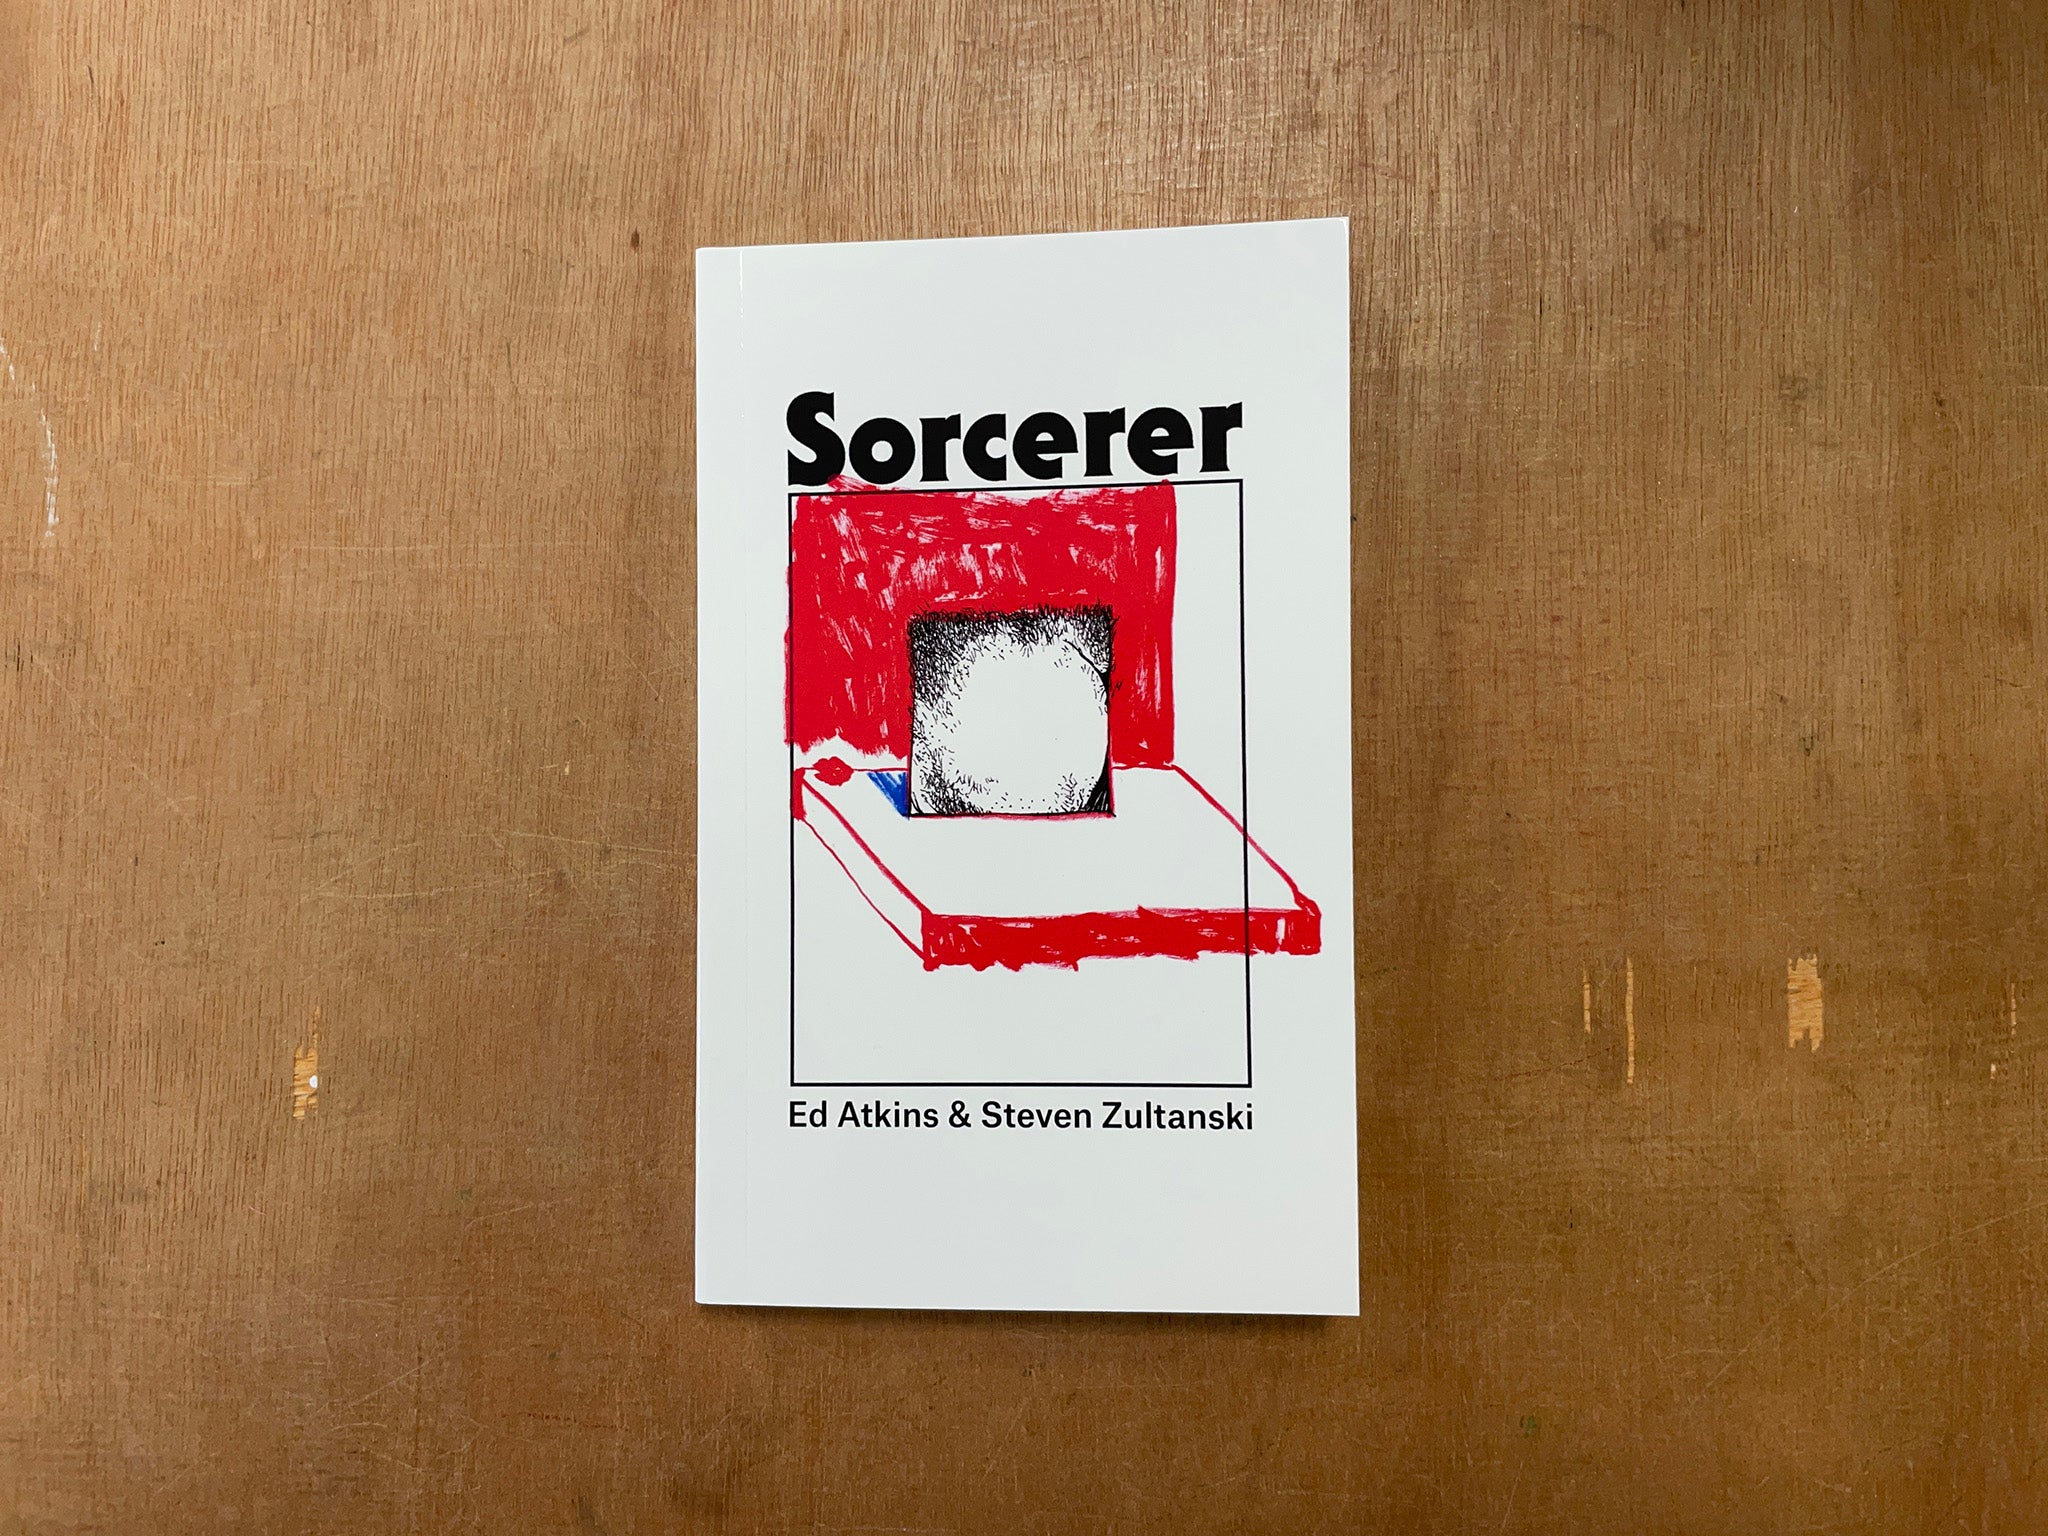 SORCERER by Ed Atkins & Steven Zultanski